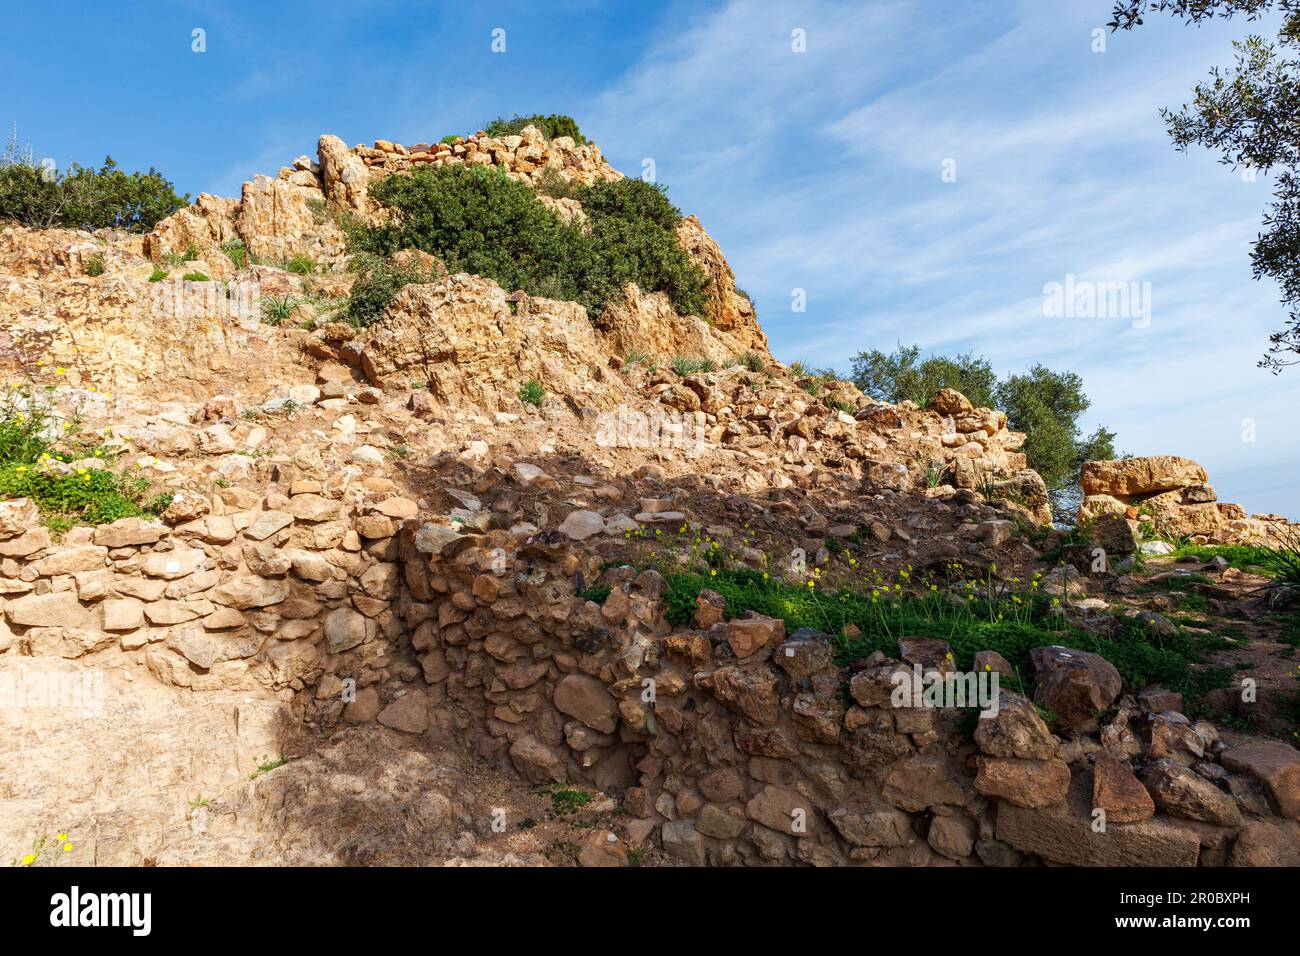 Die nuraghe oder Nurhag, die wichtigste Art eines uralten megalithischen Bauwerks, das in Sardinien zu finden ist Stockfoto